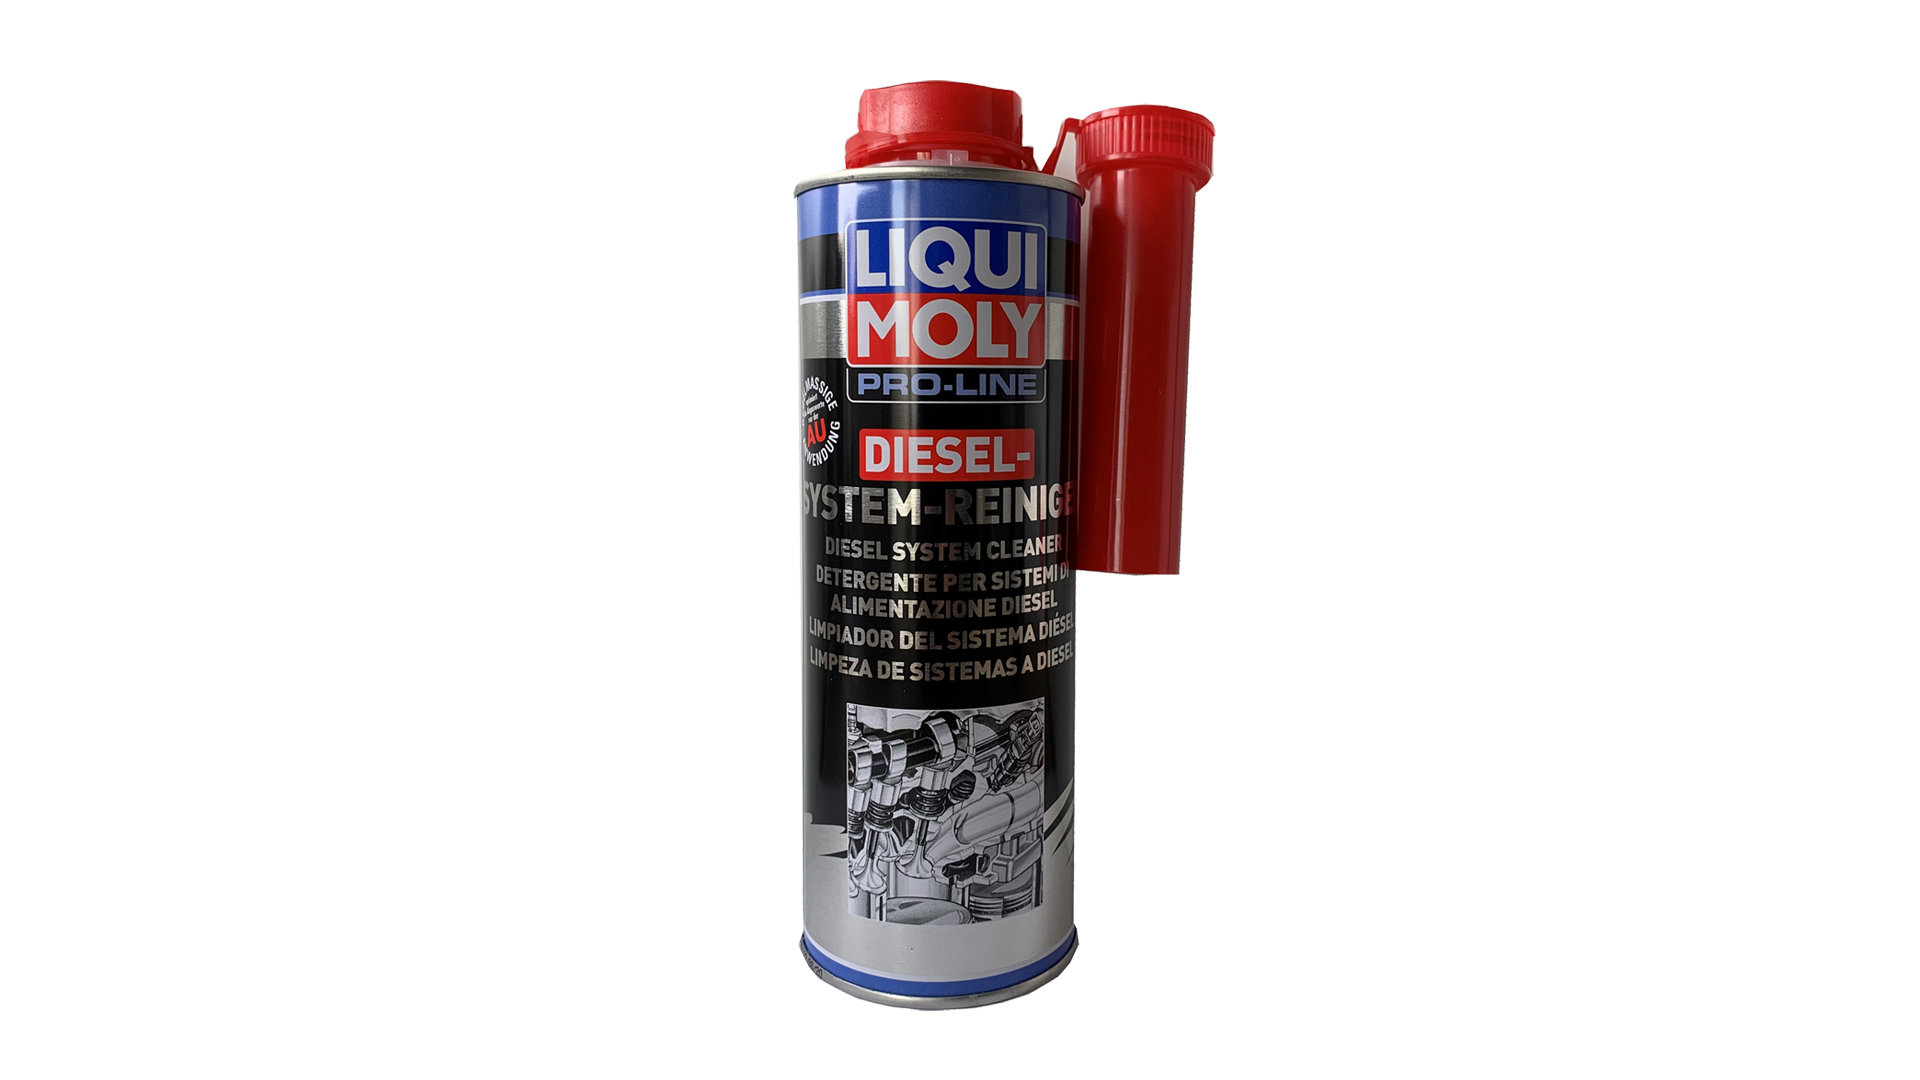 LIQUI MOLY Pro-Line Nettoyant pour système diesel 500 ml Additiv